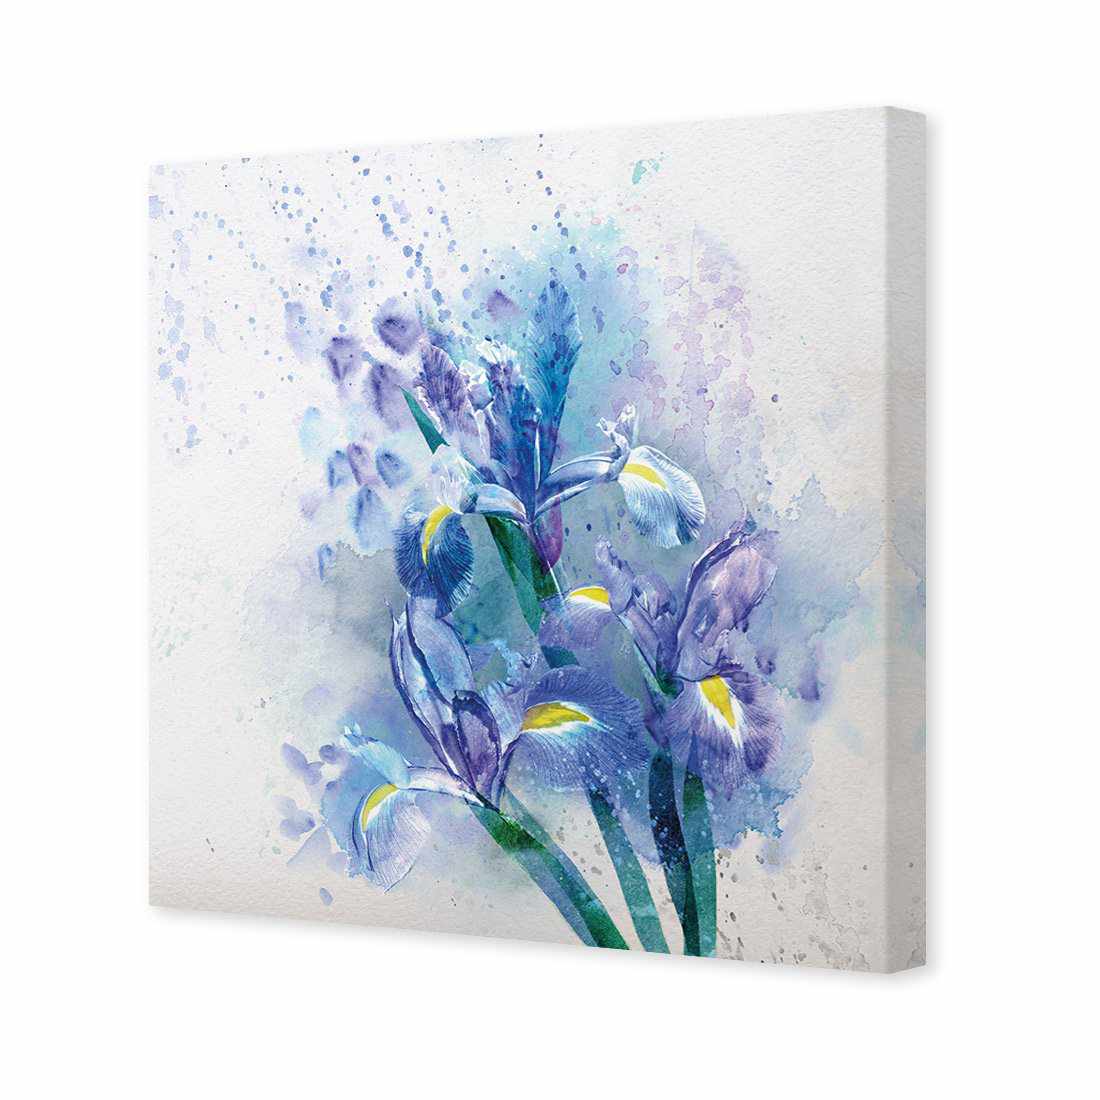 Iris Rain Canvas Art-Canvas-Wall Art Designs-30x30cm-Canvas - No Frame-Wall Art Designs